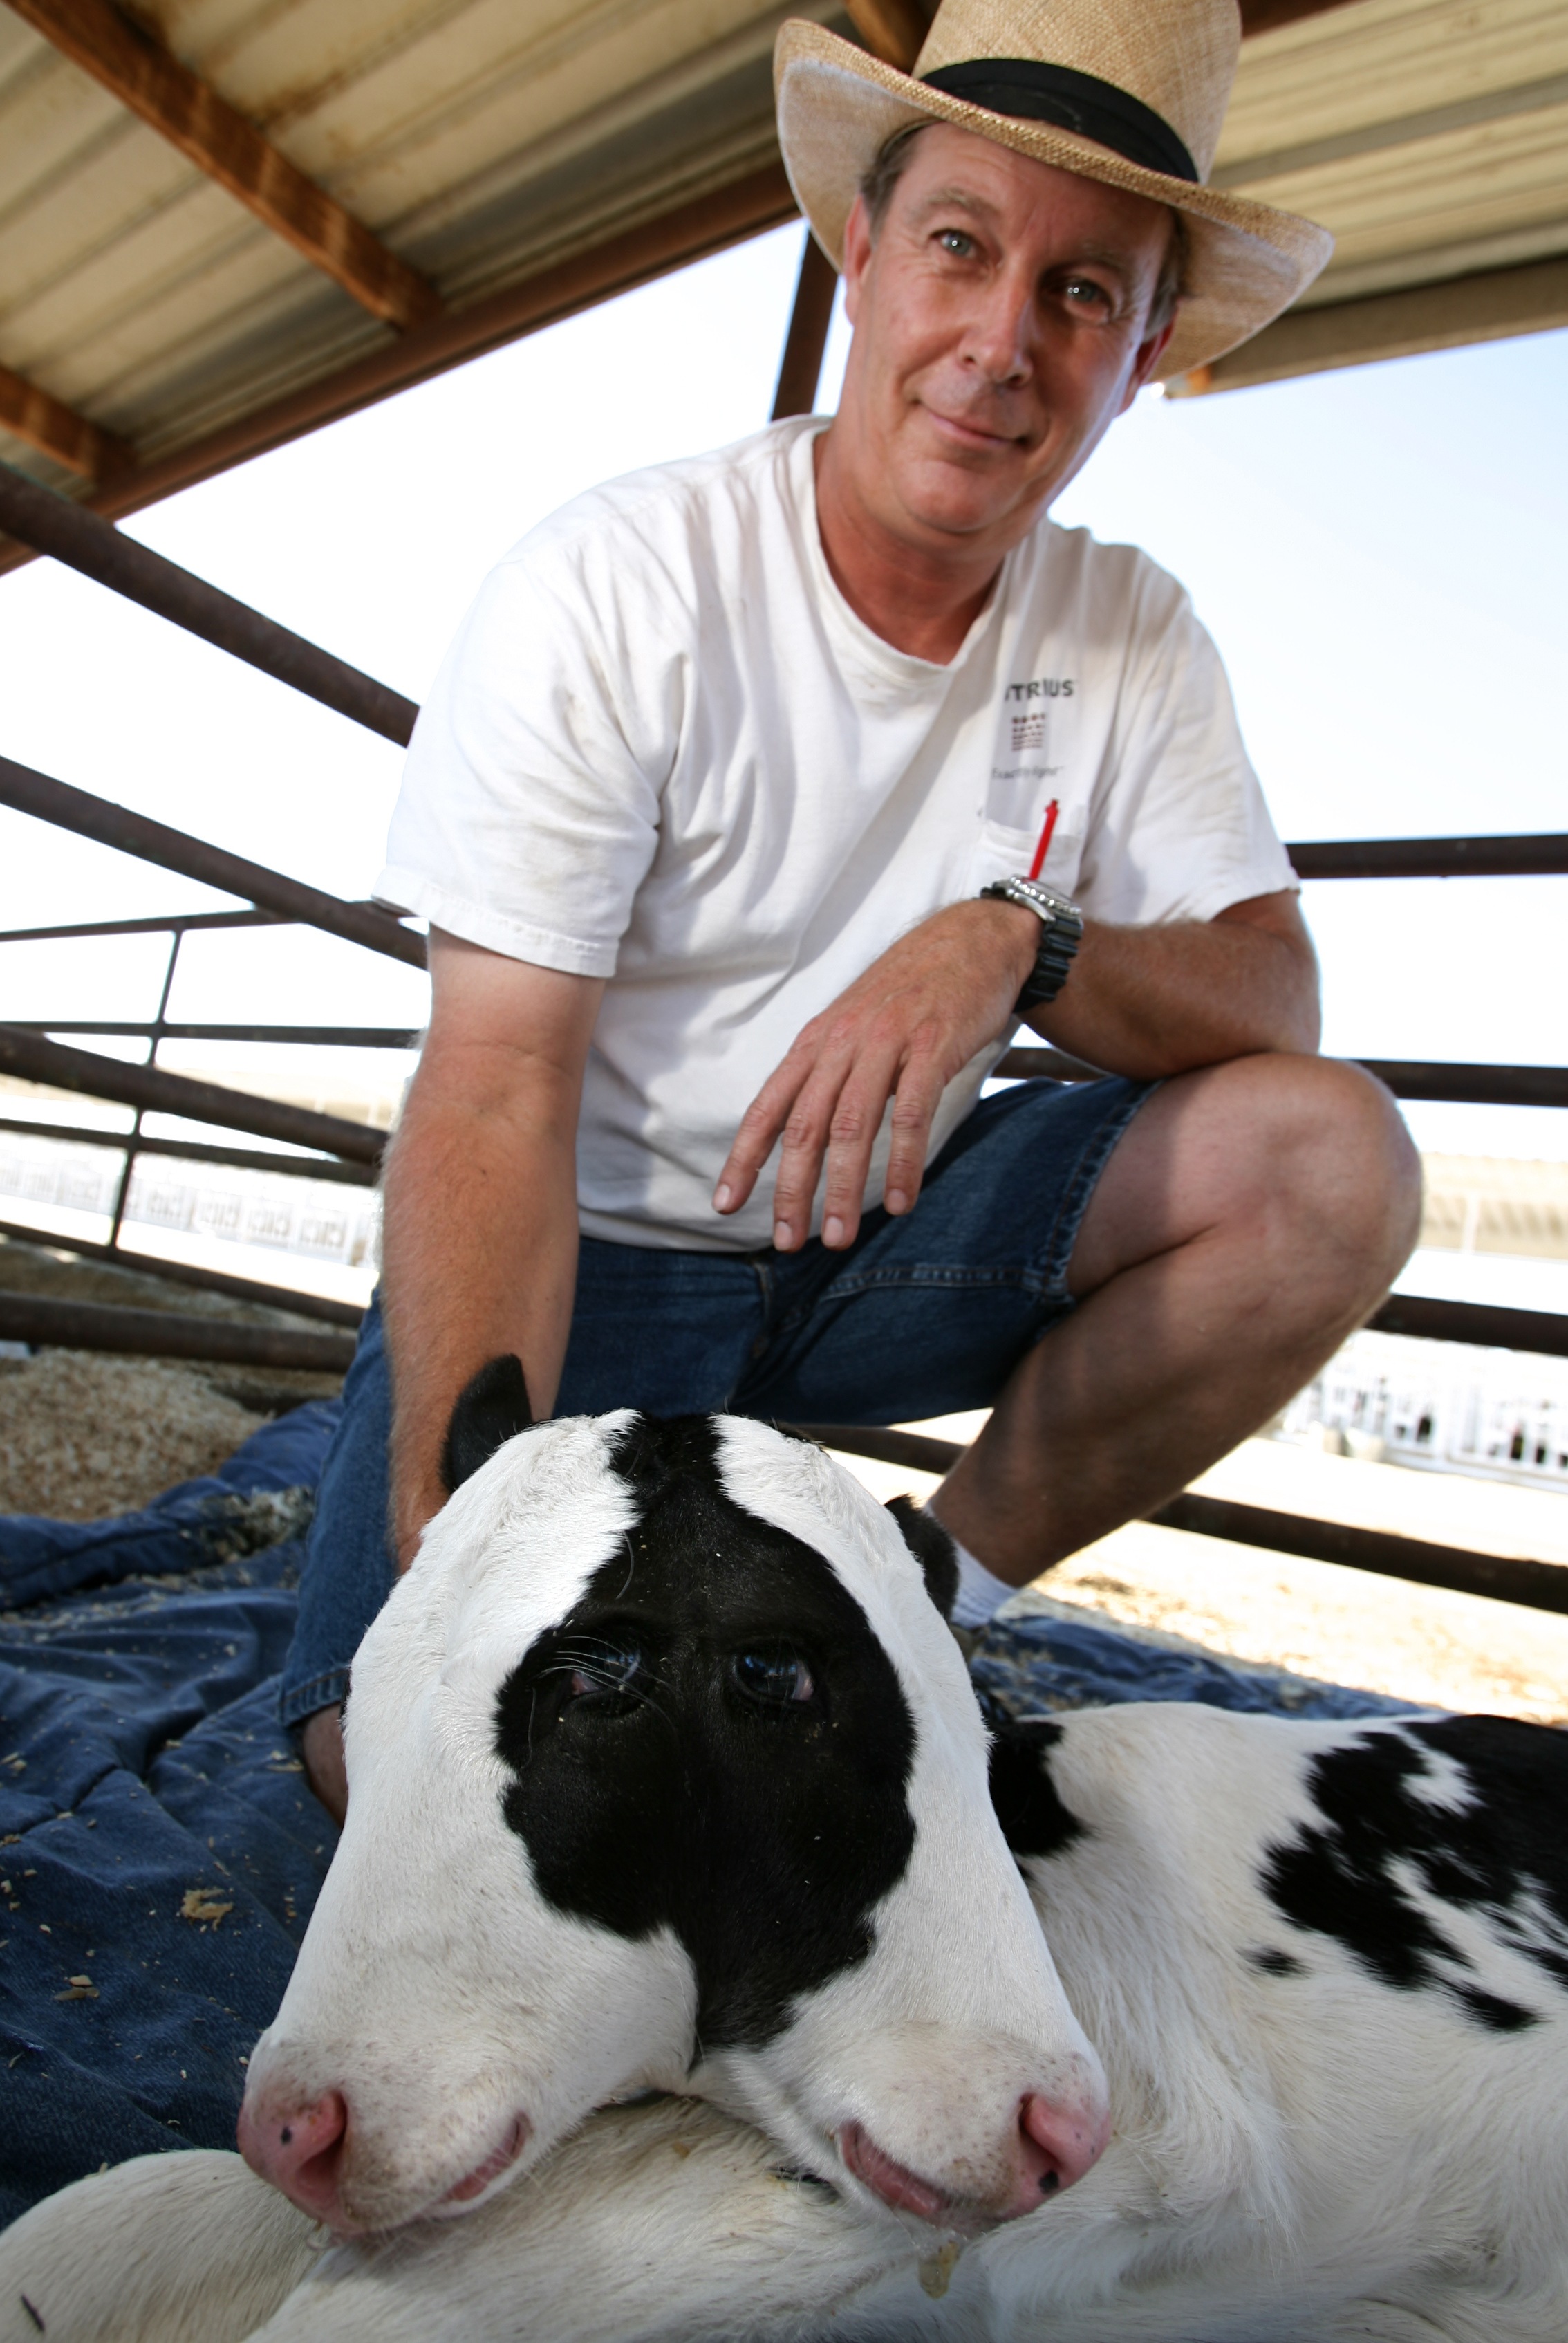 2007 föddes kalven Blinkie med två huvuden, fyra ögon och tre öron. Här med husse Greg Hamstra. 